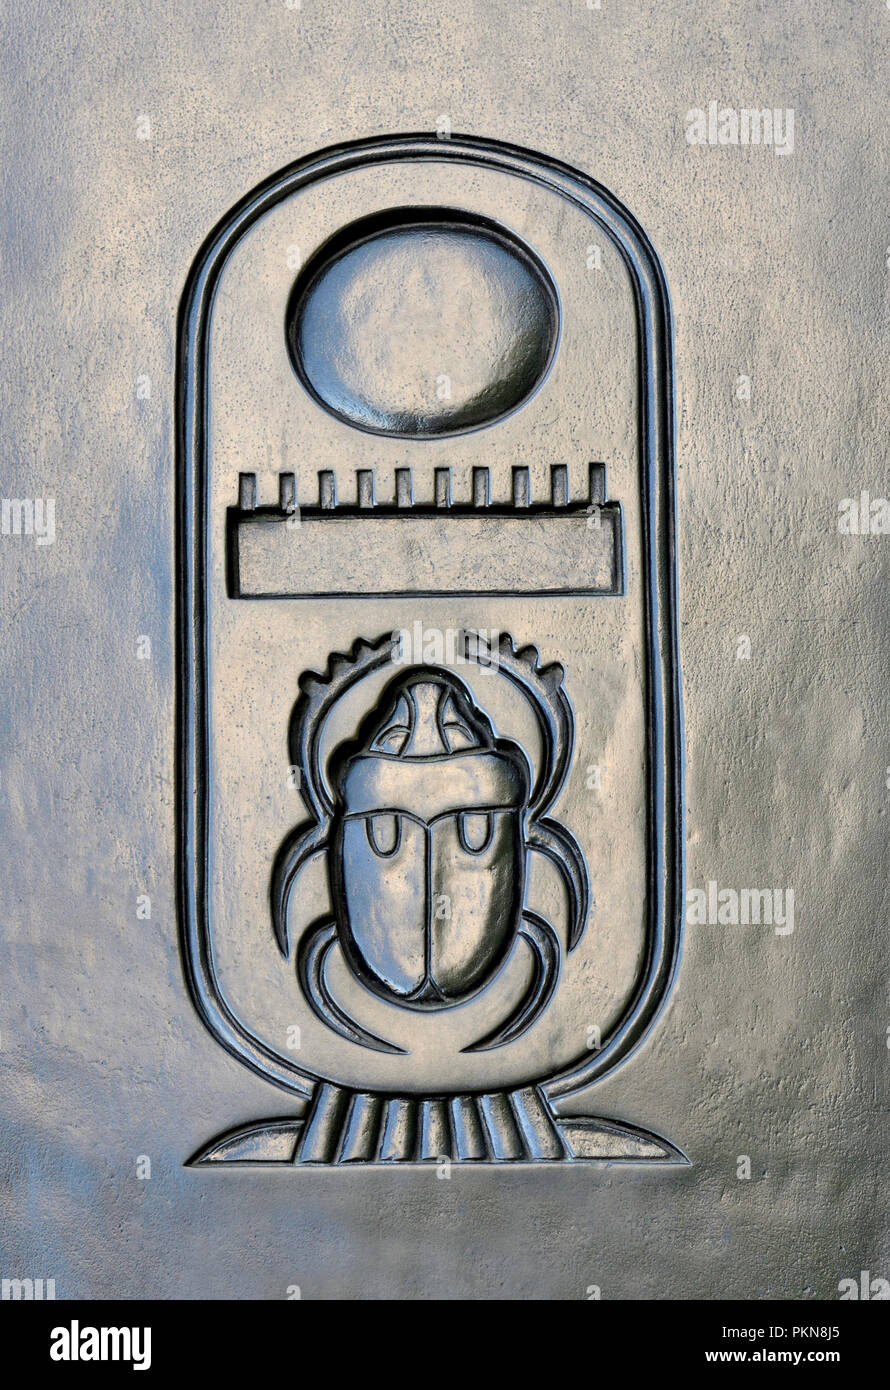 Hieroglyphen Kartusche 'Thuthmose III' - Hieroglyphen auf eine der sphynxes auf der Basis von Cleopatra's Needle, Victoria Embankment, London, England, U Stockfoto